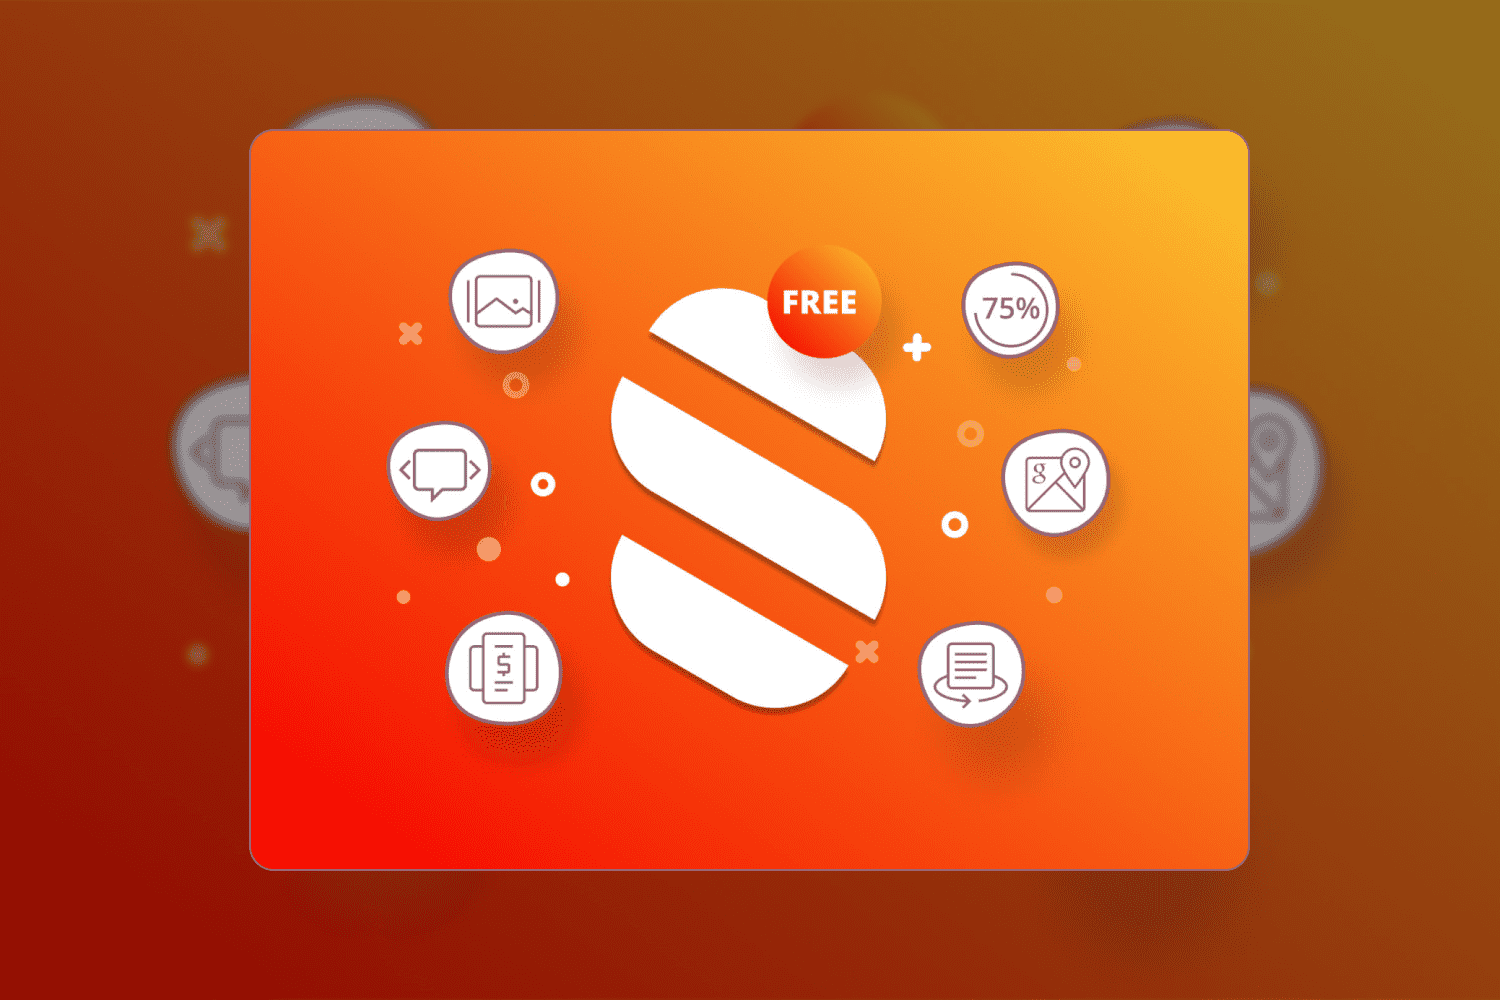 Stratum logo on orange background with white icons.